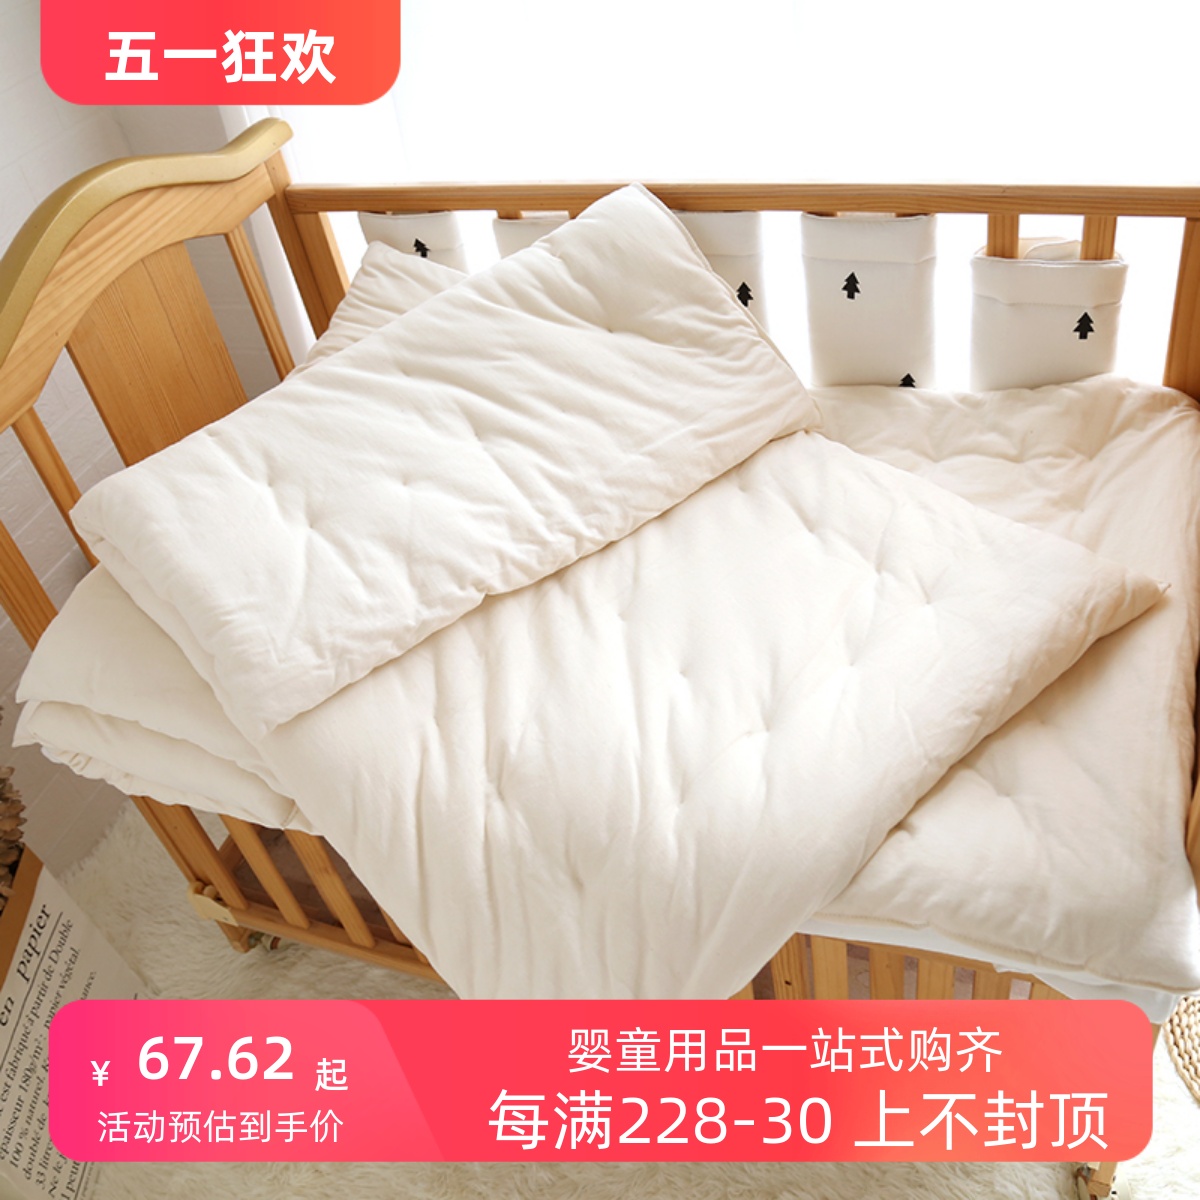 婴儿床垫褥幼儿园小床垫褥子铺被纯棉被芯新生宝宝垫被子四季通用